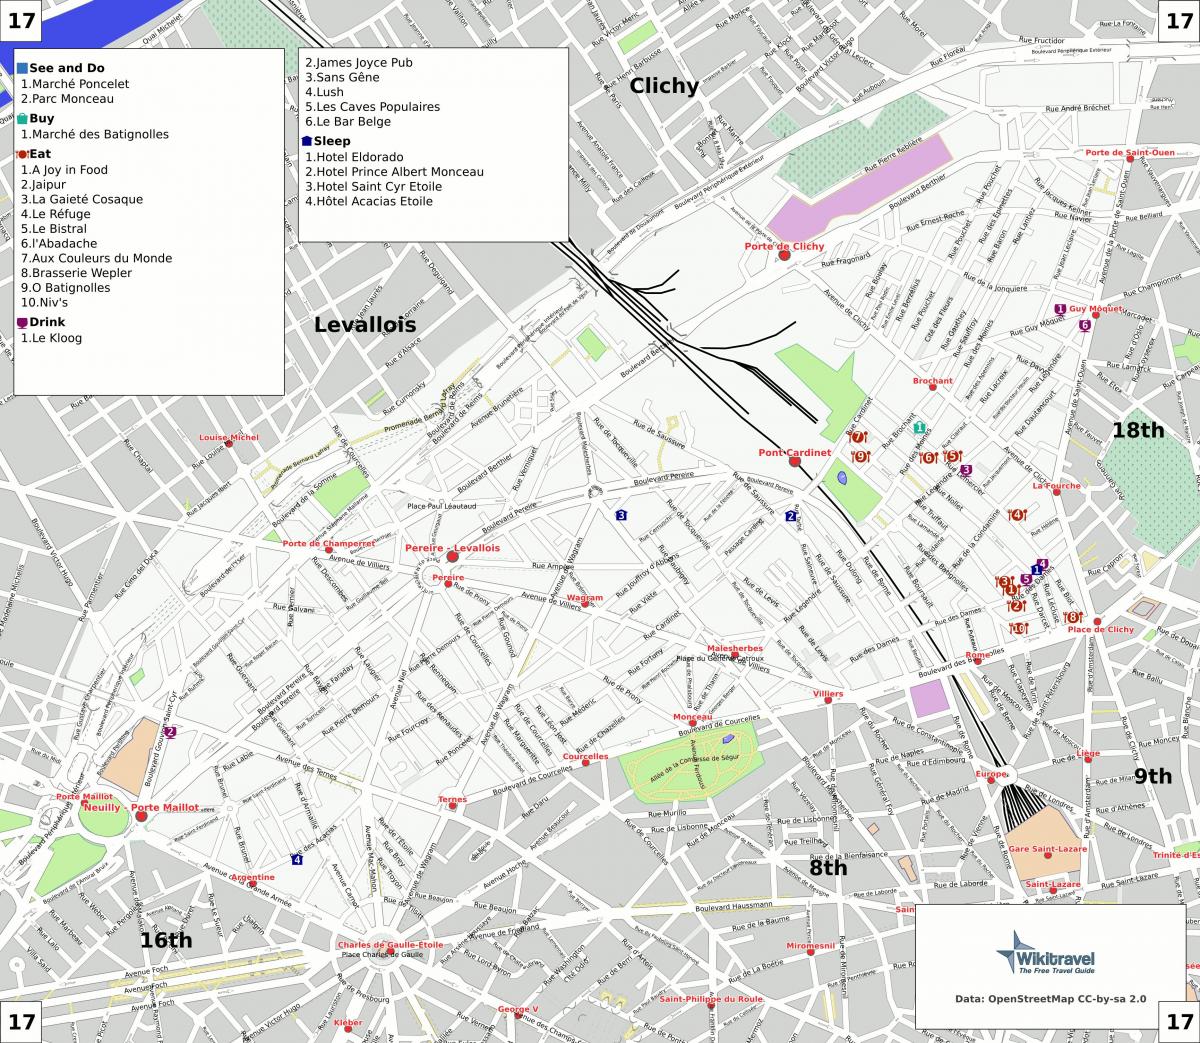 Harta e 17 arrondissement e Parisit